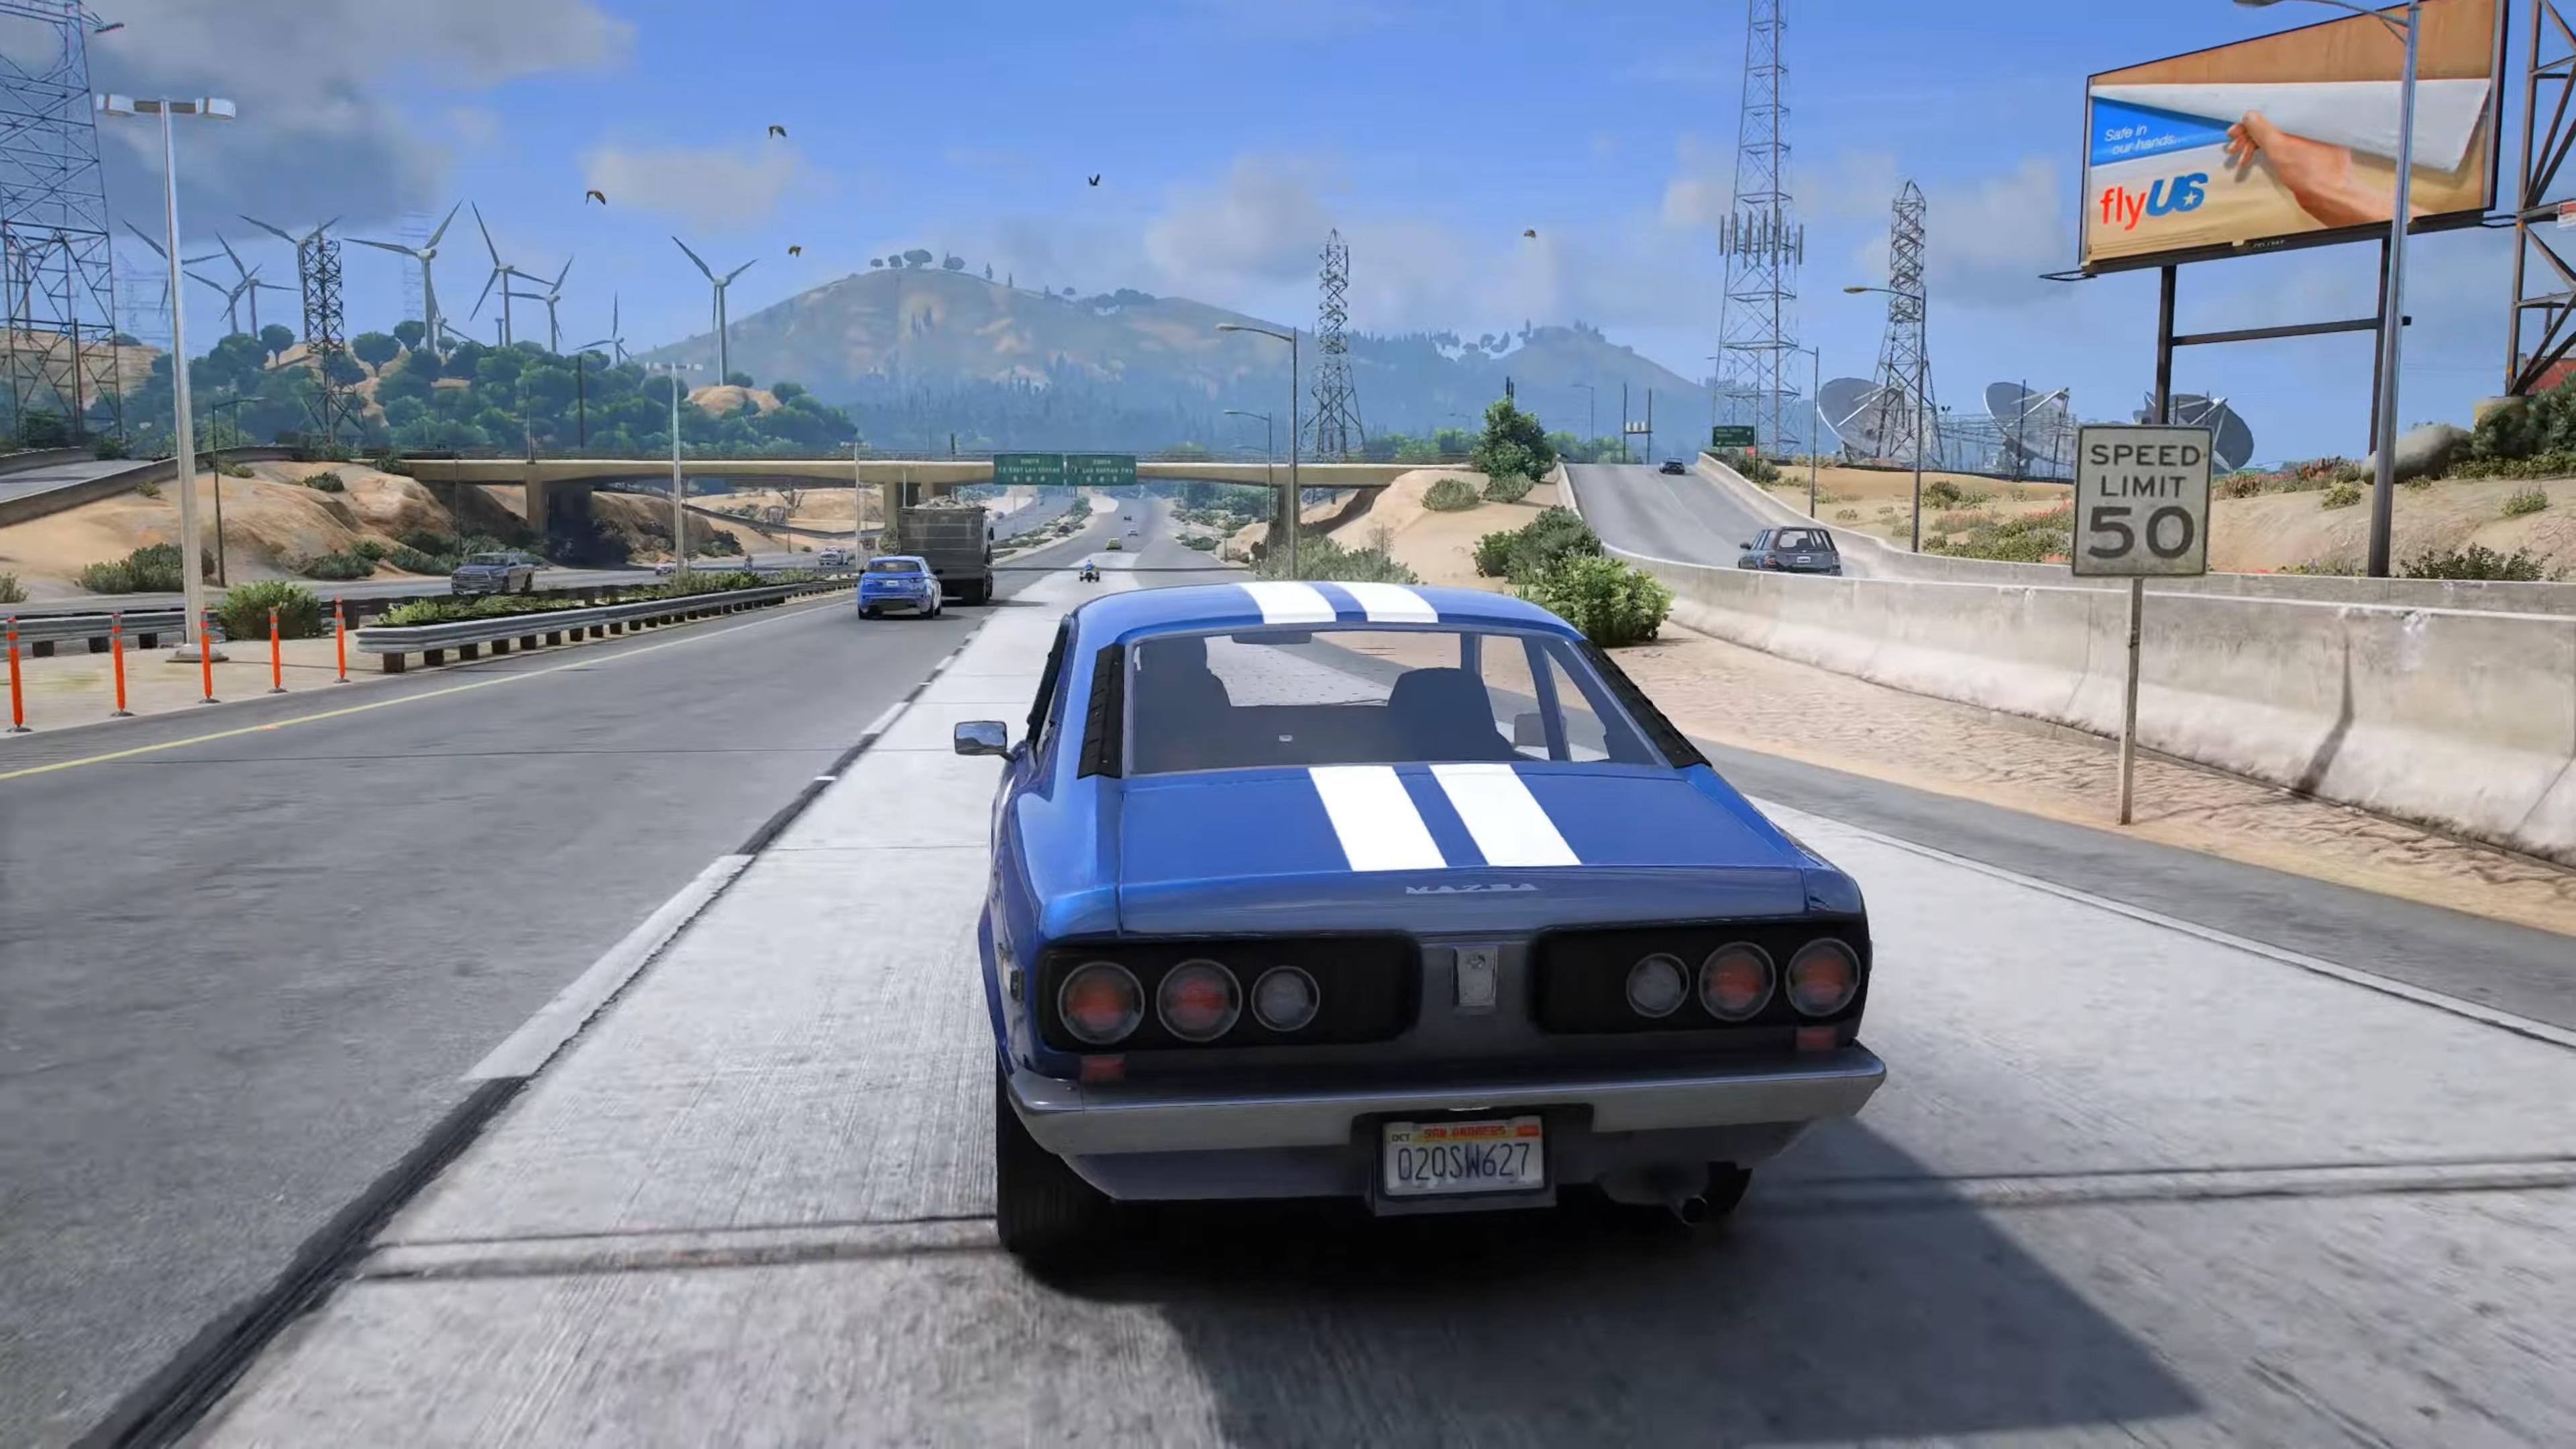 Screenshot 1 of Jogos de condução de carro em mundo aberto 0.7